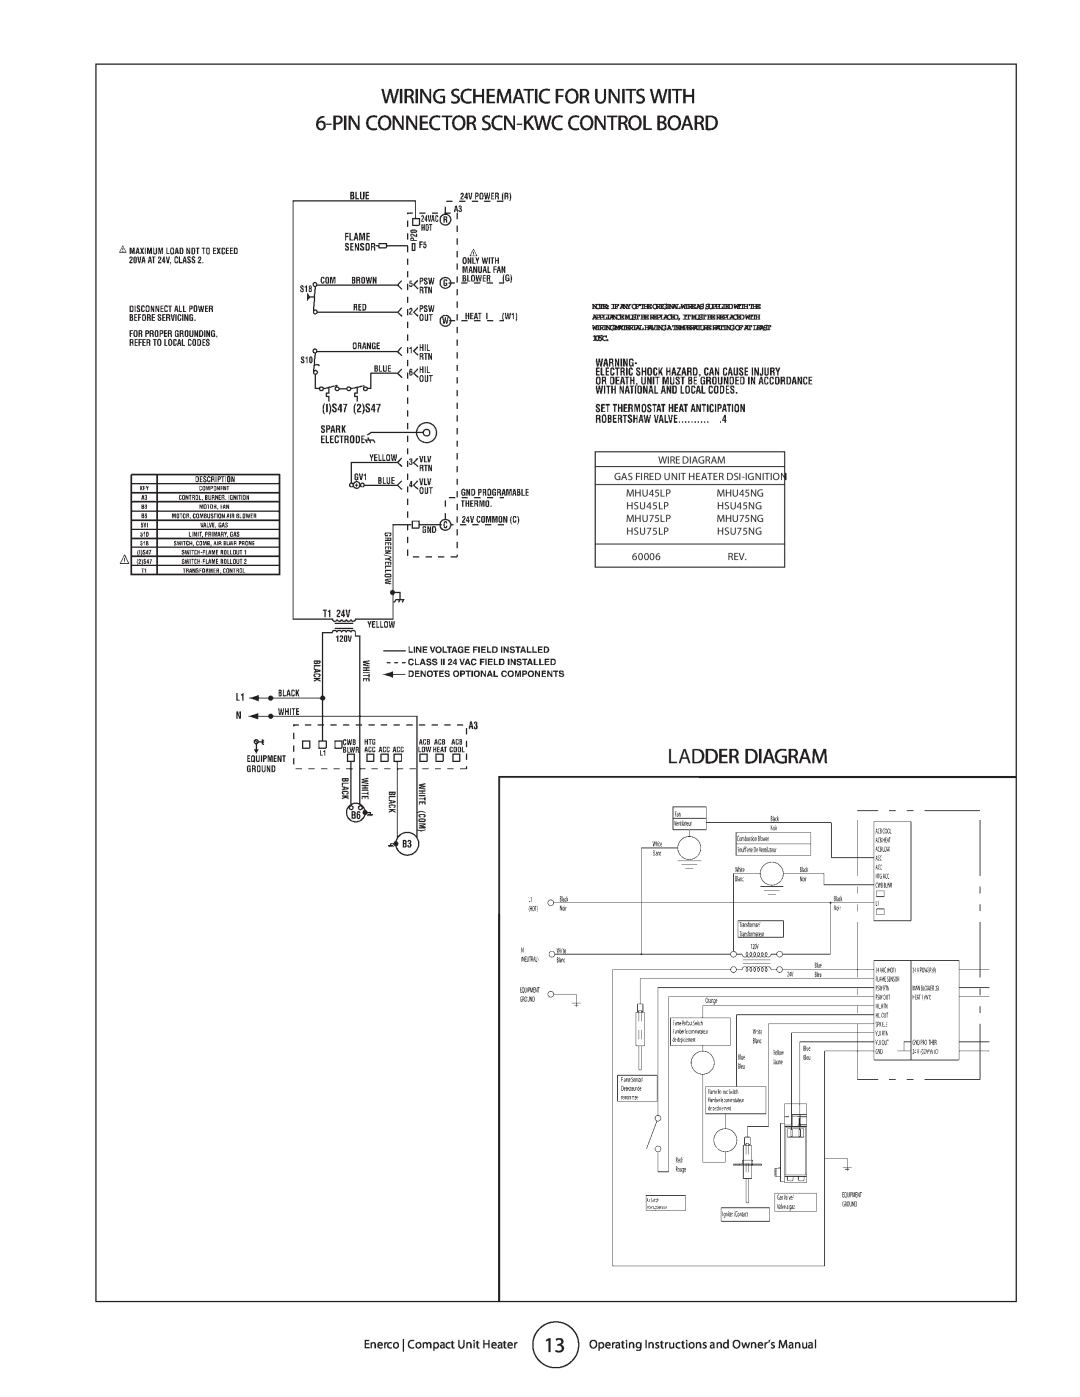 Enerco MHU 45, MHU 75 Ladder Diagram, Note Ifanyoftheoriginalwireassuppliedwiththe, MHU45NG, HSU45NG, MHU75NG, HSU75NG 